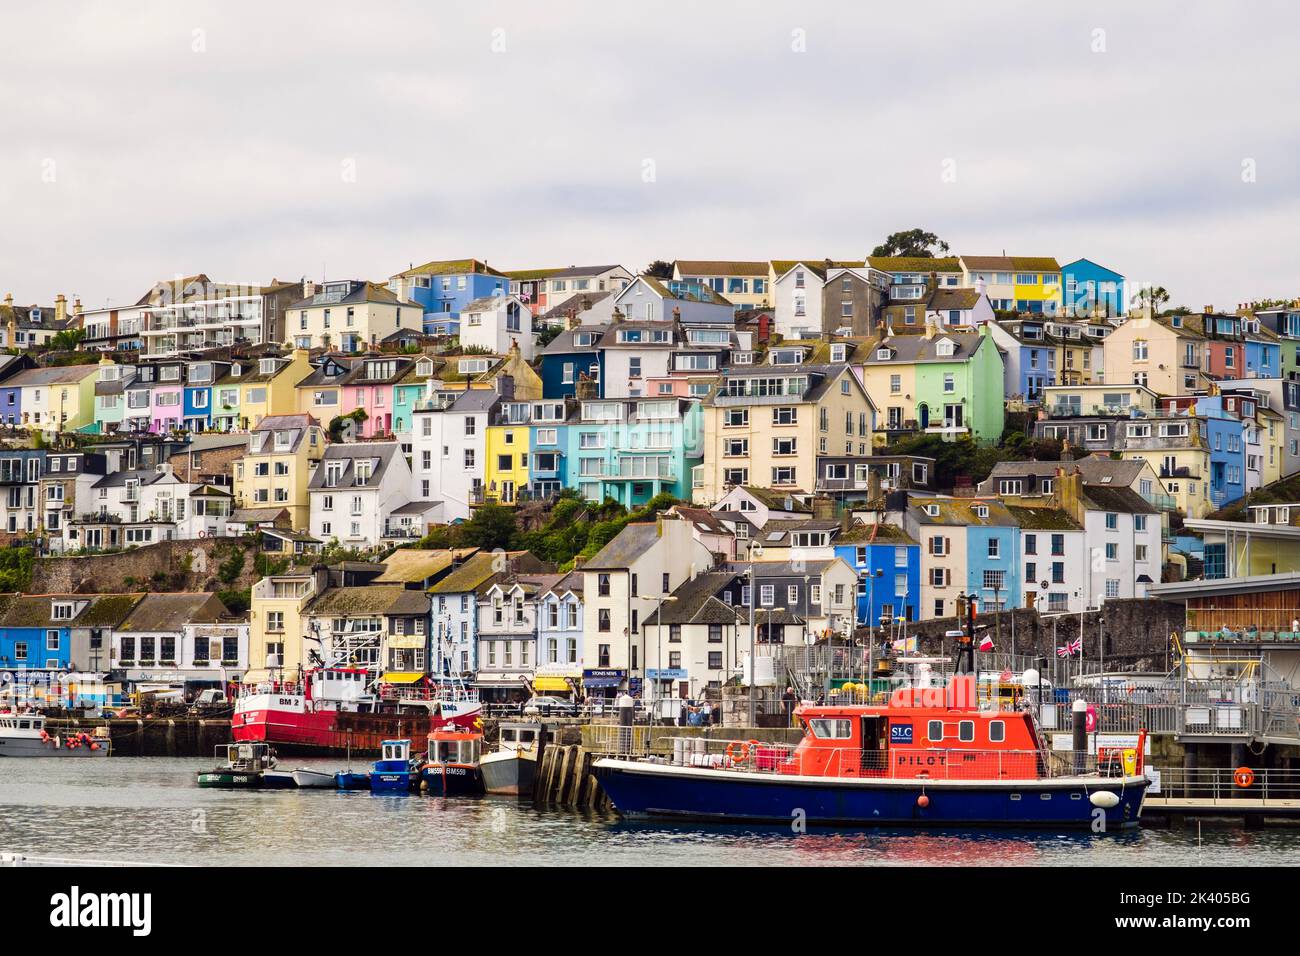 Case colorate sulla collina che si affaccia sul porto interno con pilota barca ormeggiata sul molo. Brixham, Devon, Inghilterra, Regno Unito, Gran Bretagna Foto Stock